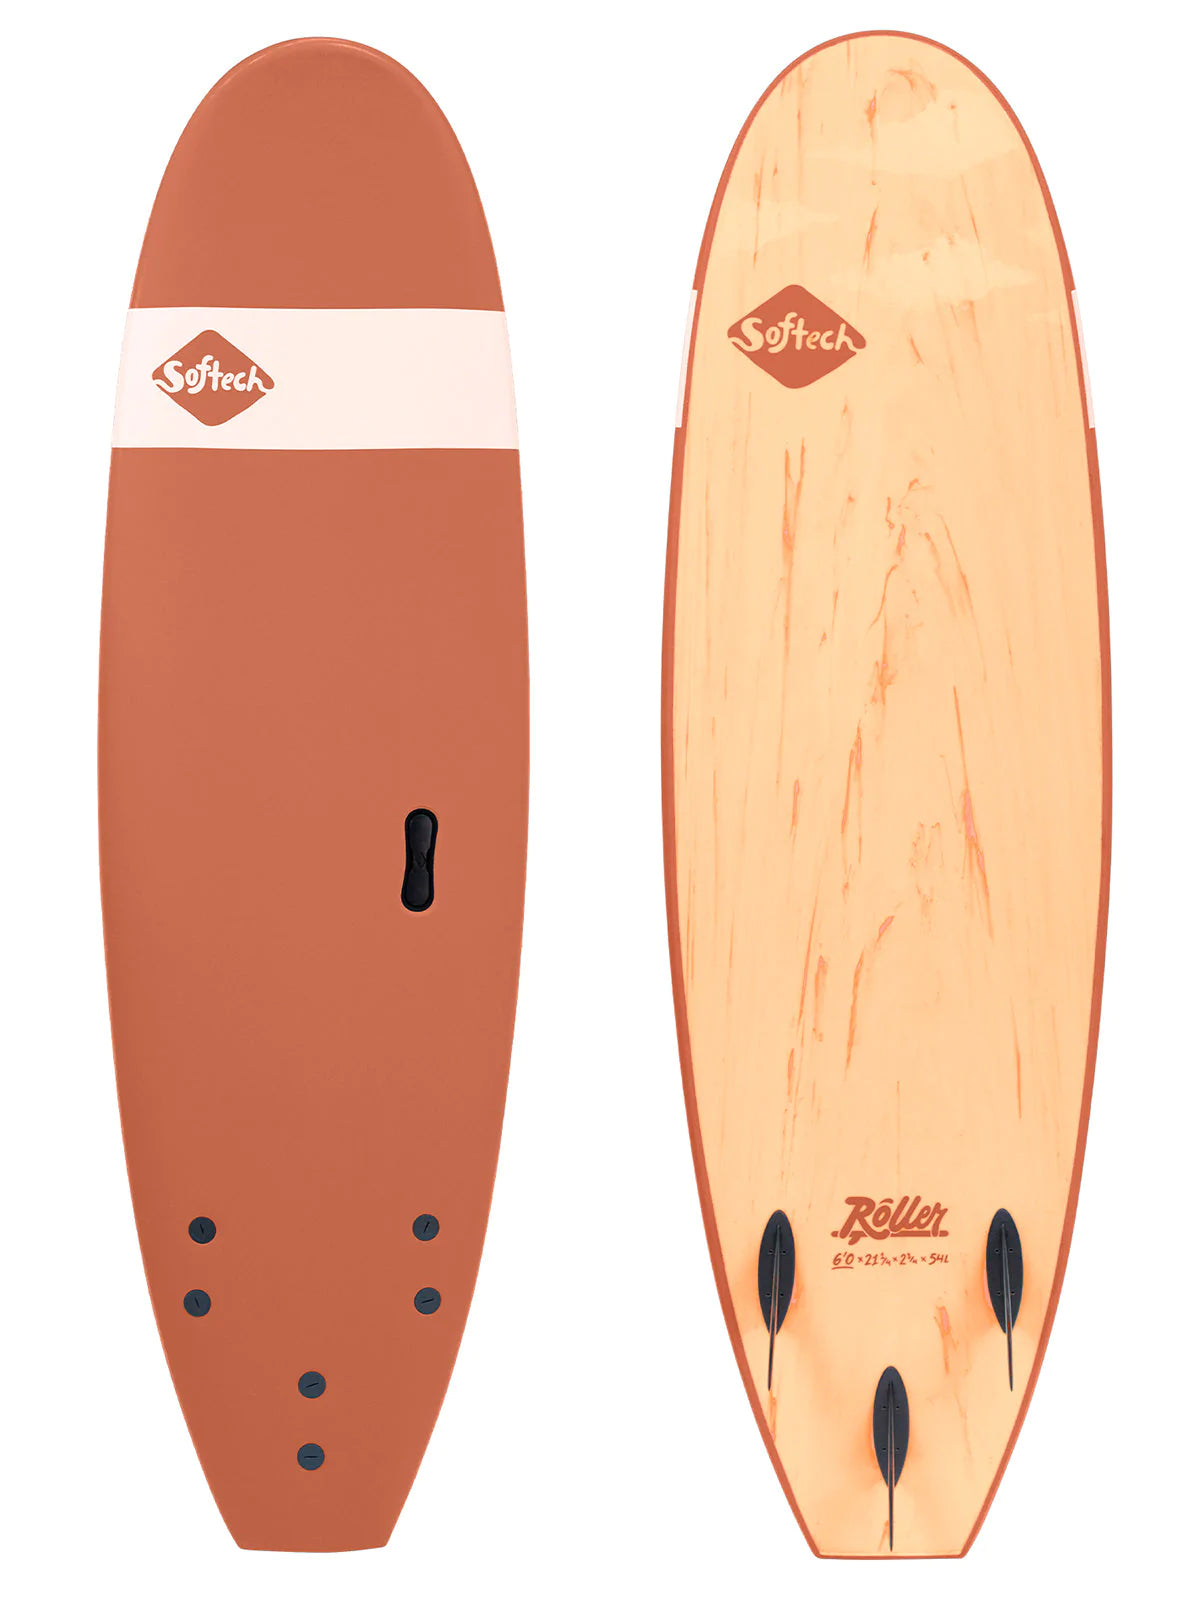 SOFTECH ROLLER SOFT TOP SURFBOARD 6'0"